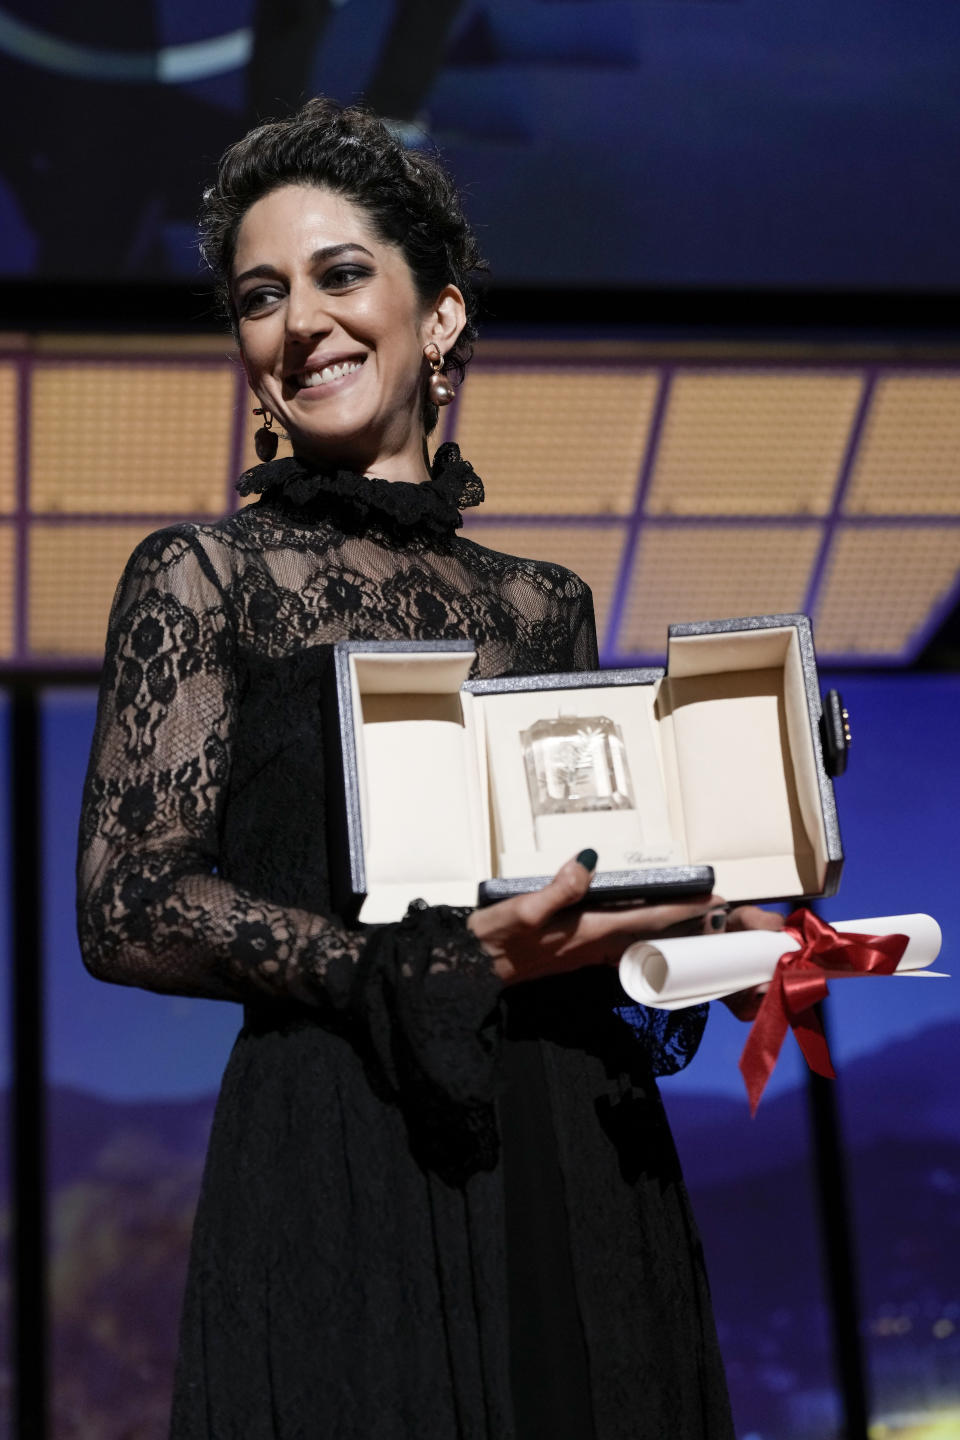 Zahra Amir Ebrahimi recibe el premio a la mejor actriz en el Festival de Cine de Cannes, por "Holy Spider", el sábado 28 de mayo de 2022 en Cannes, Francia. (Foto por Joel C Ryan/Invision/AP)